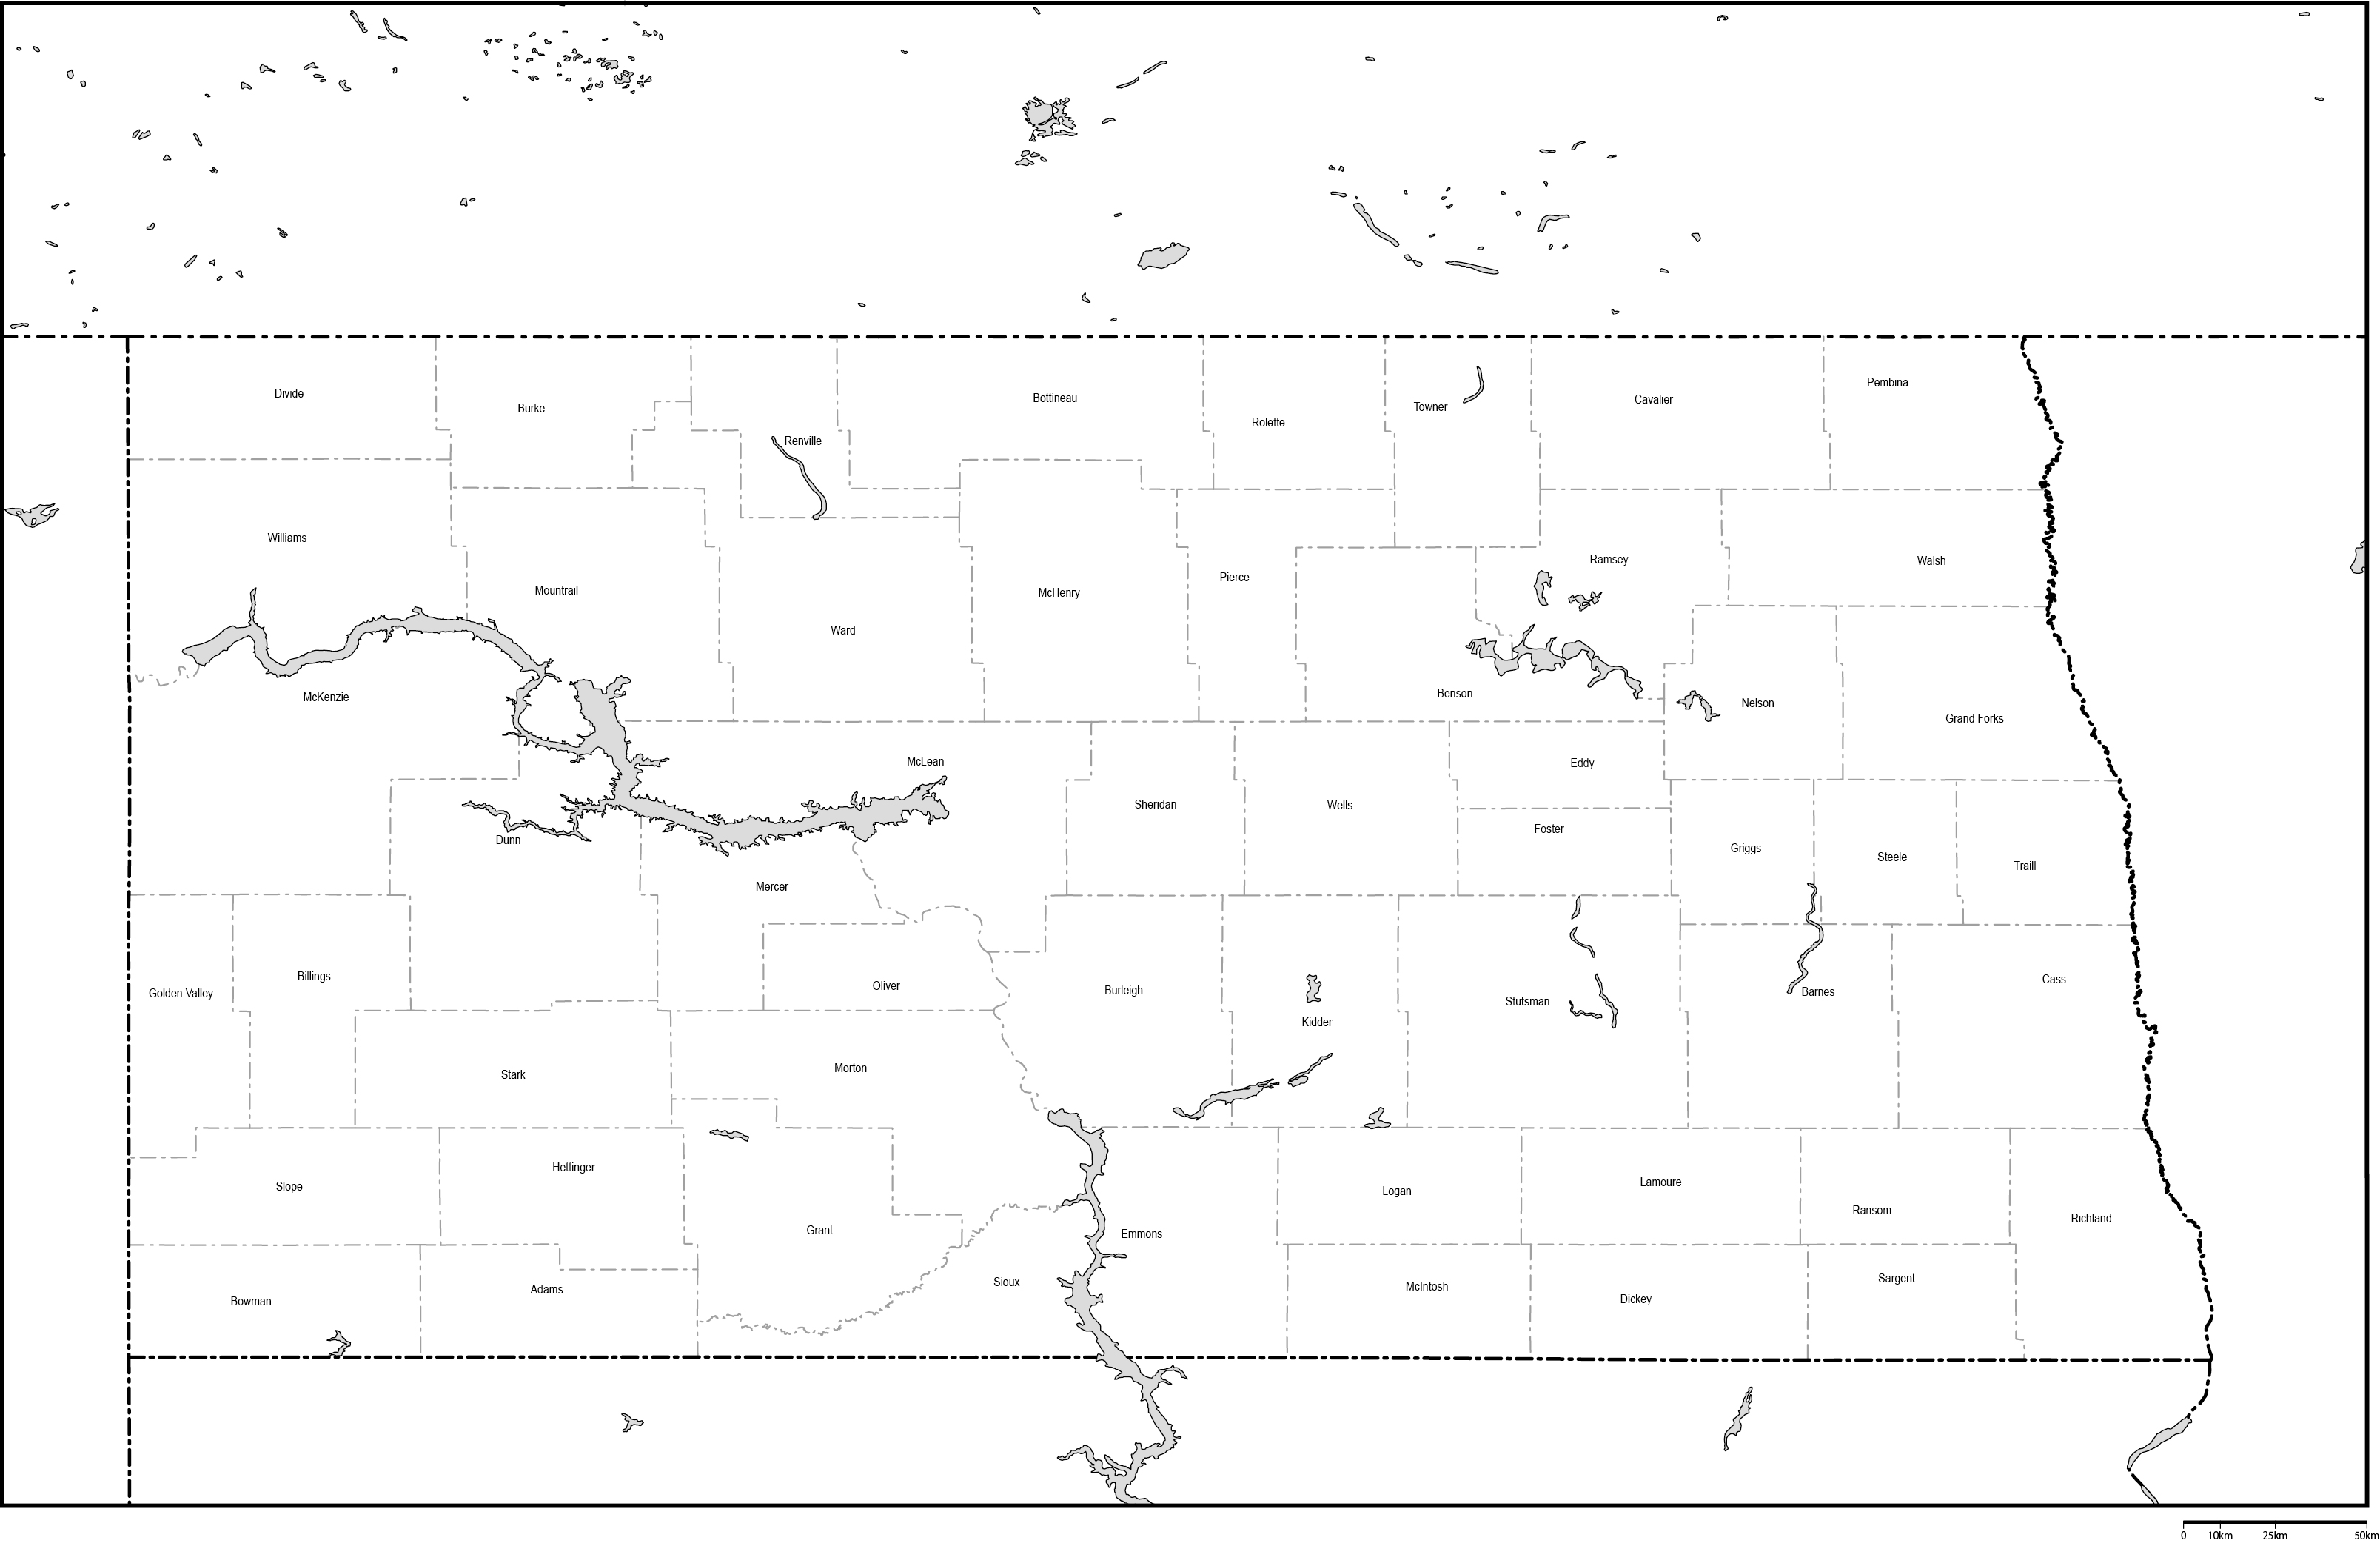 ノースダコタ州郡分け白地図郡名あり(英語)フリーデータの画像